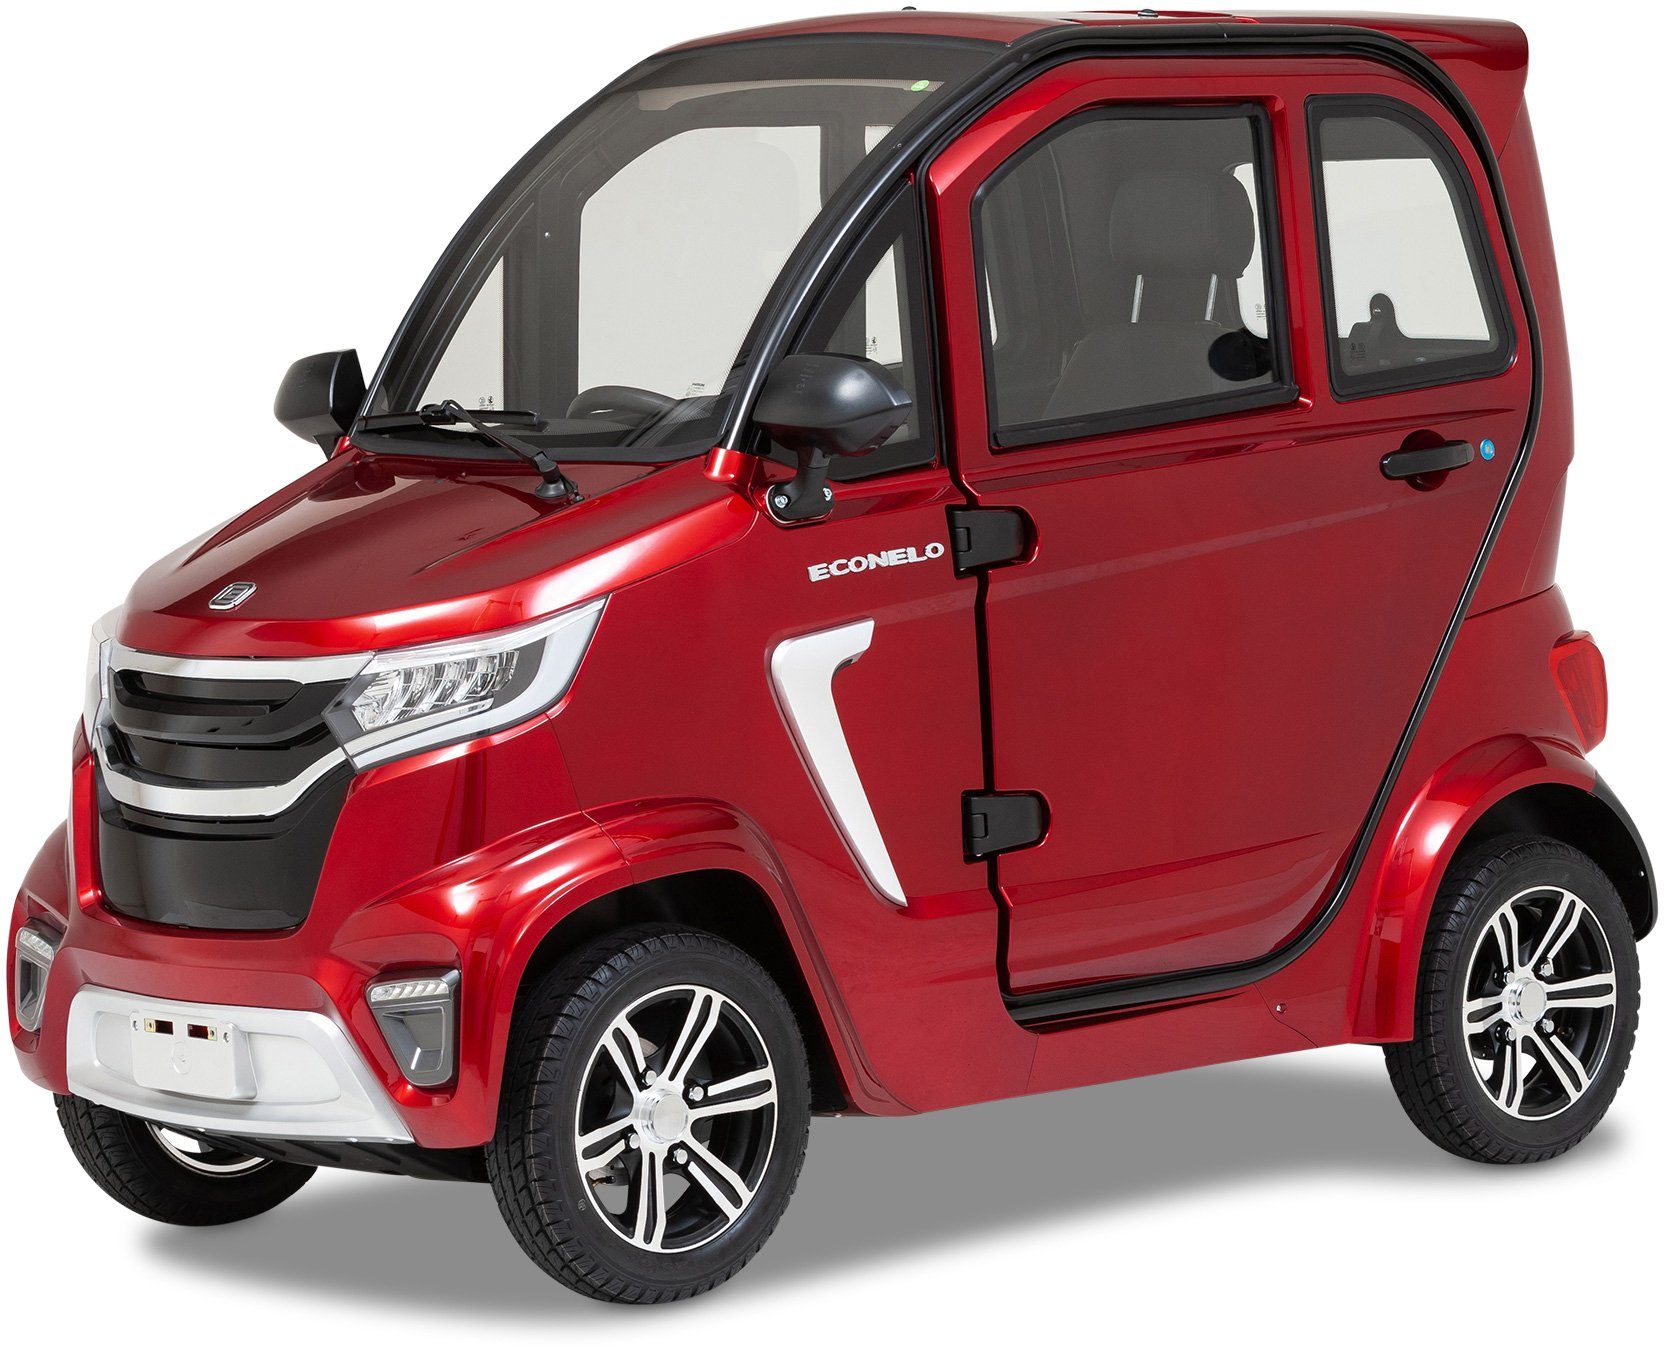 ECONELO Elektromobil NELO 4.1, 2200 W, 45 km/h, mit Rückfahrkamera rot | Elektromobile